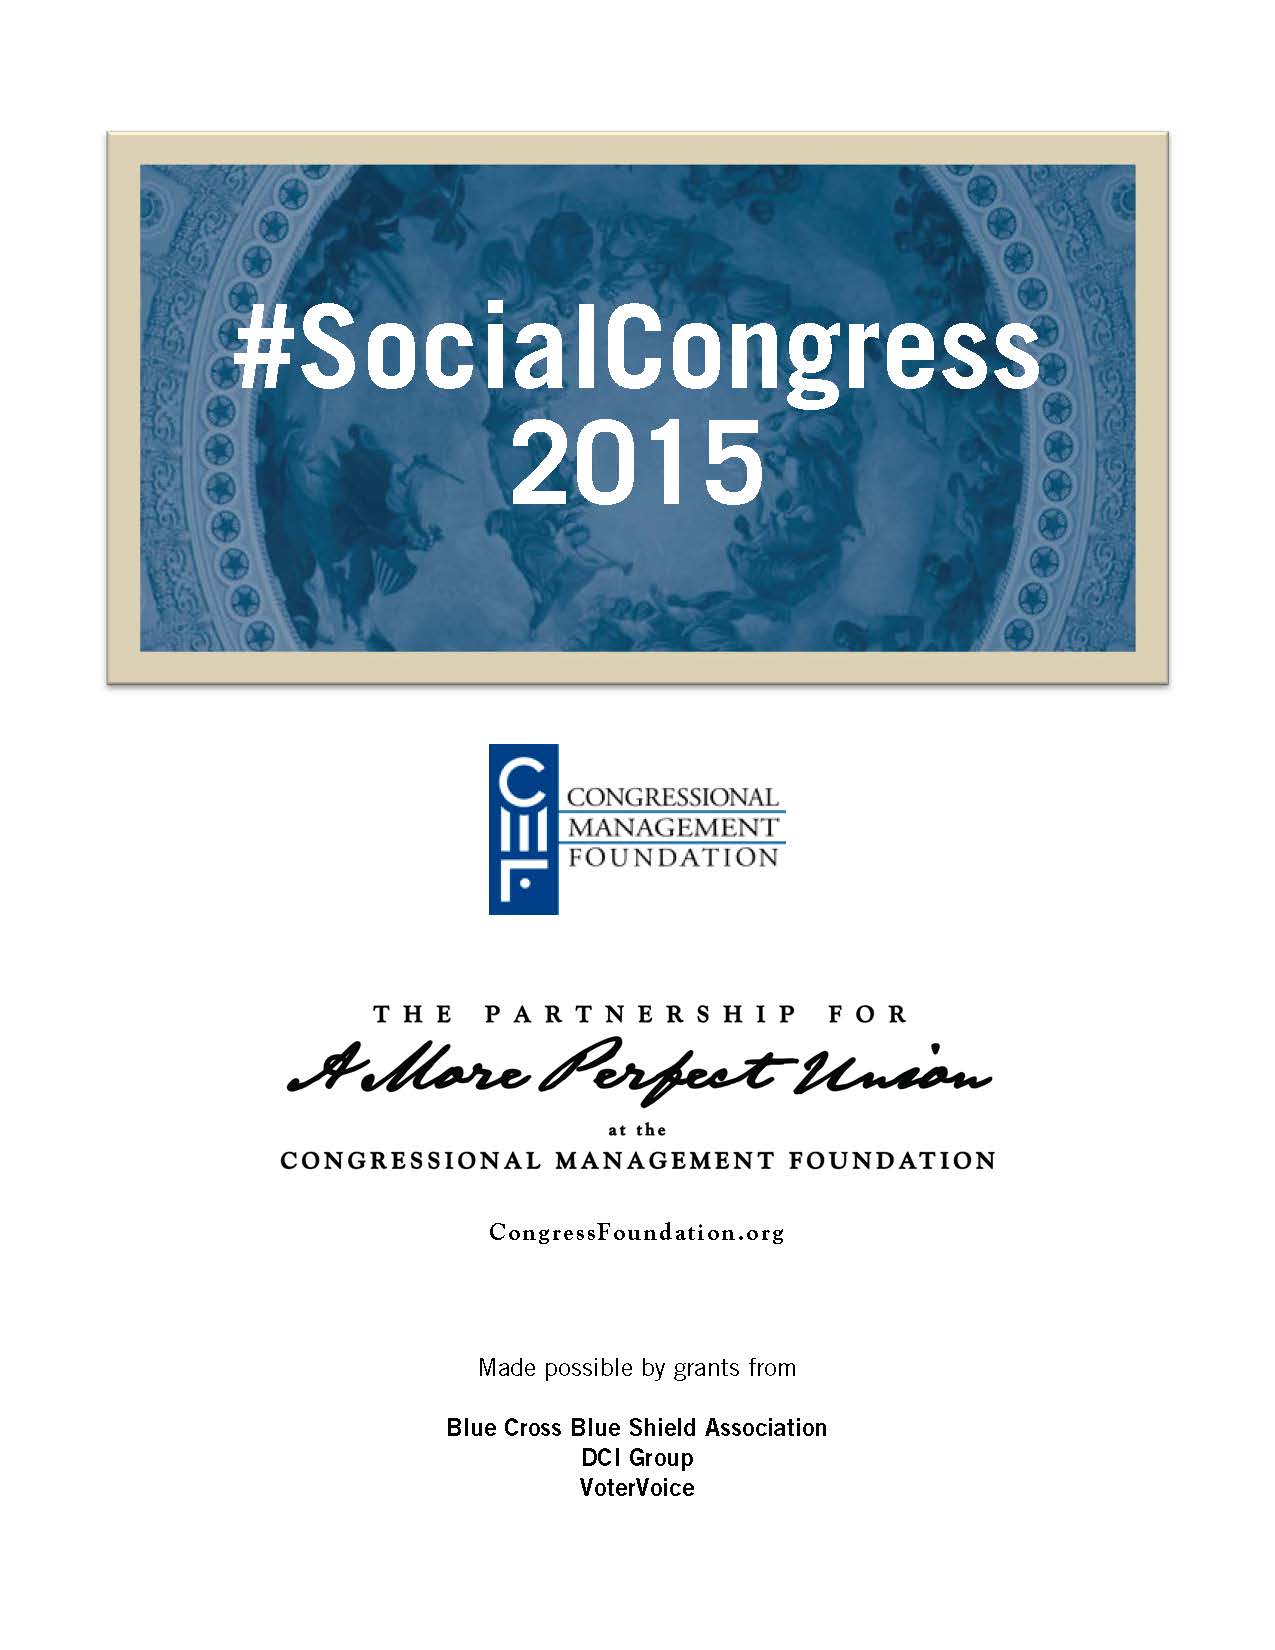 cmf-social-congress-2015-cover